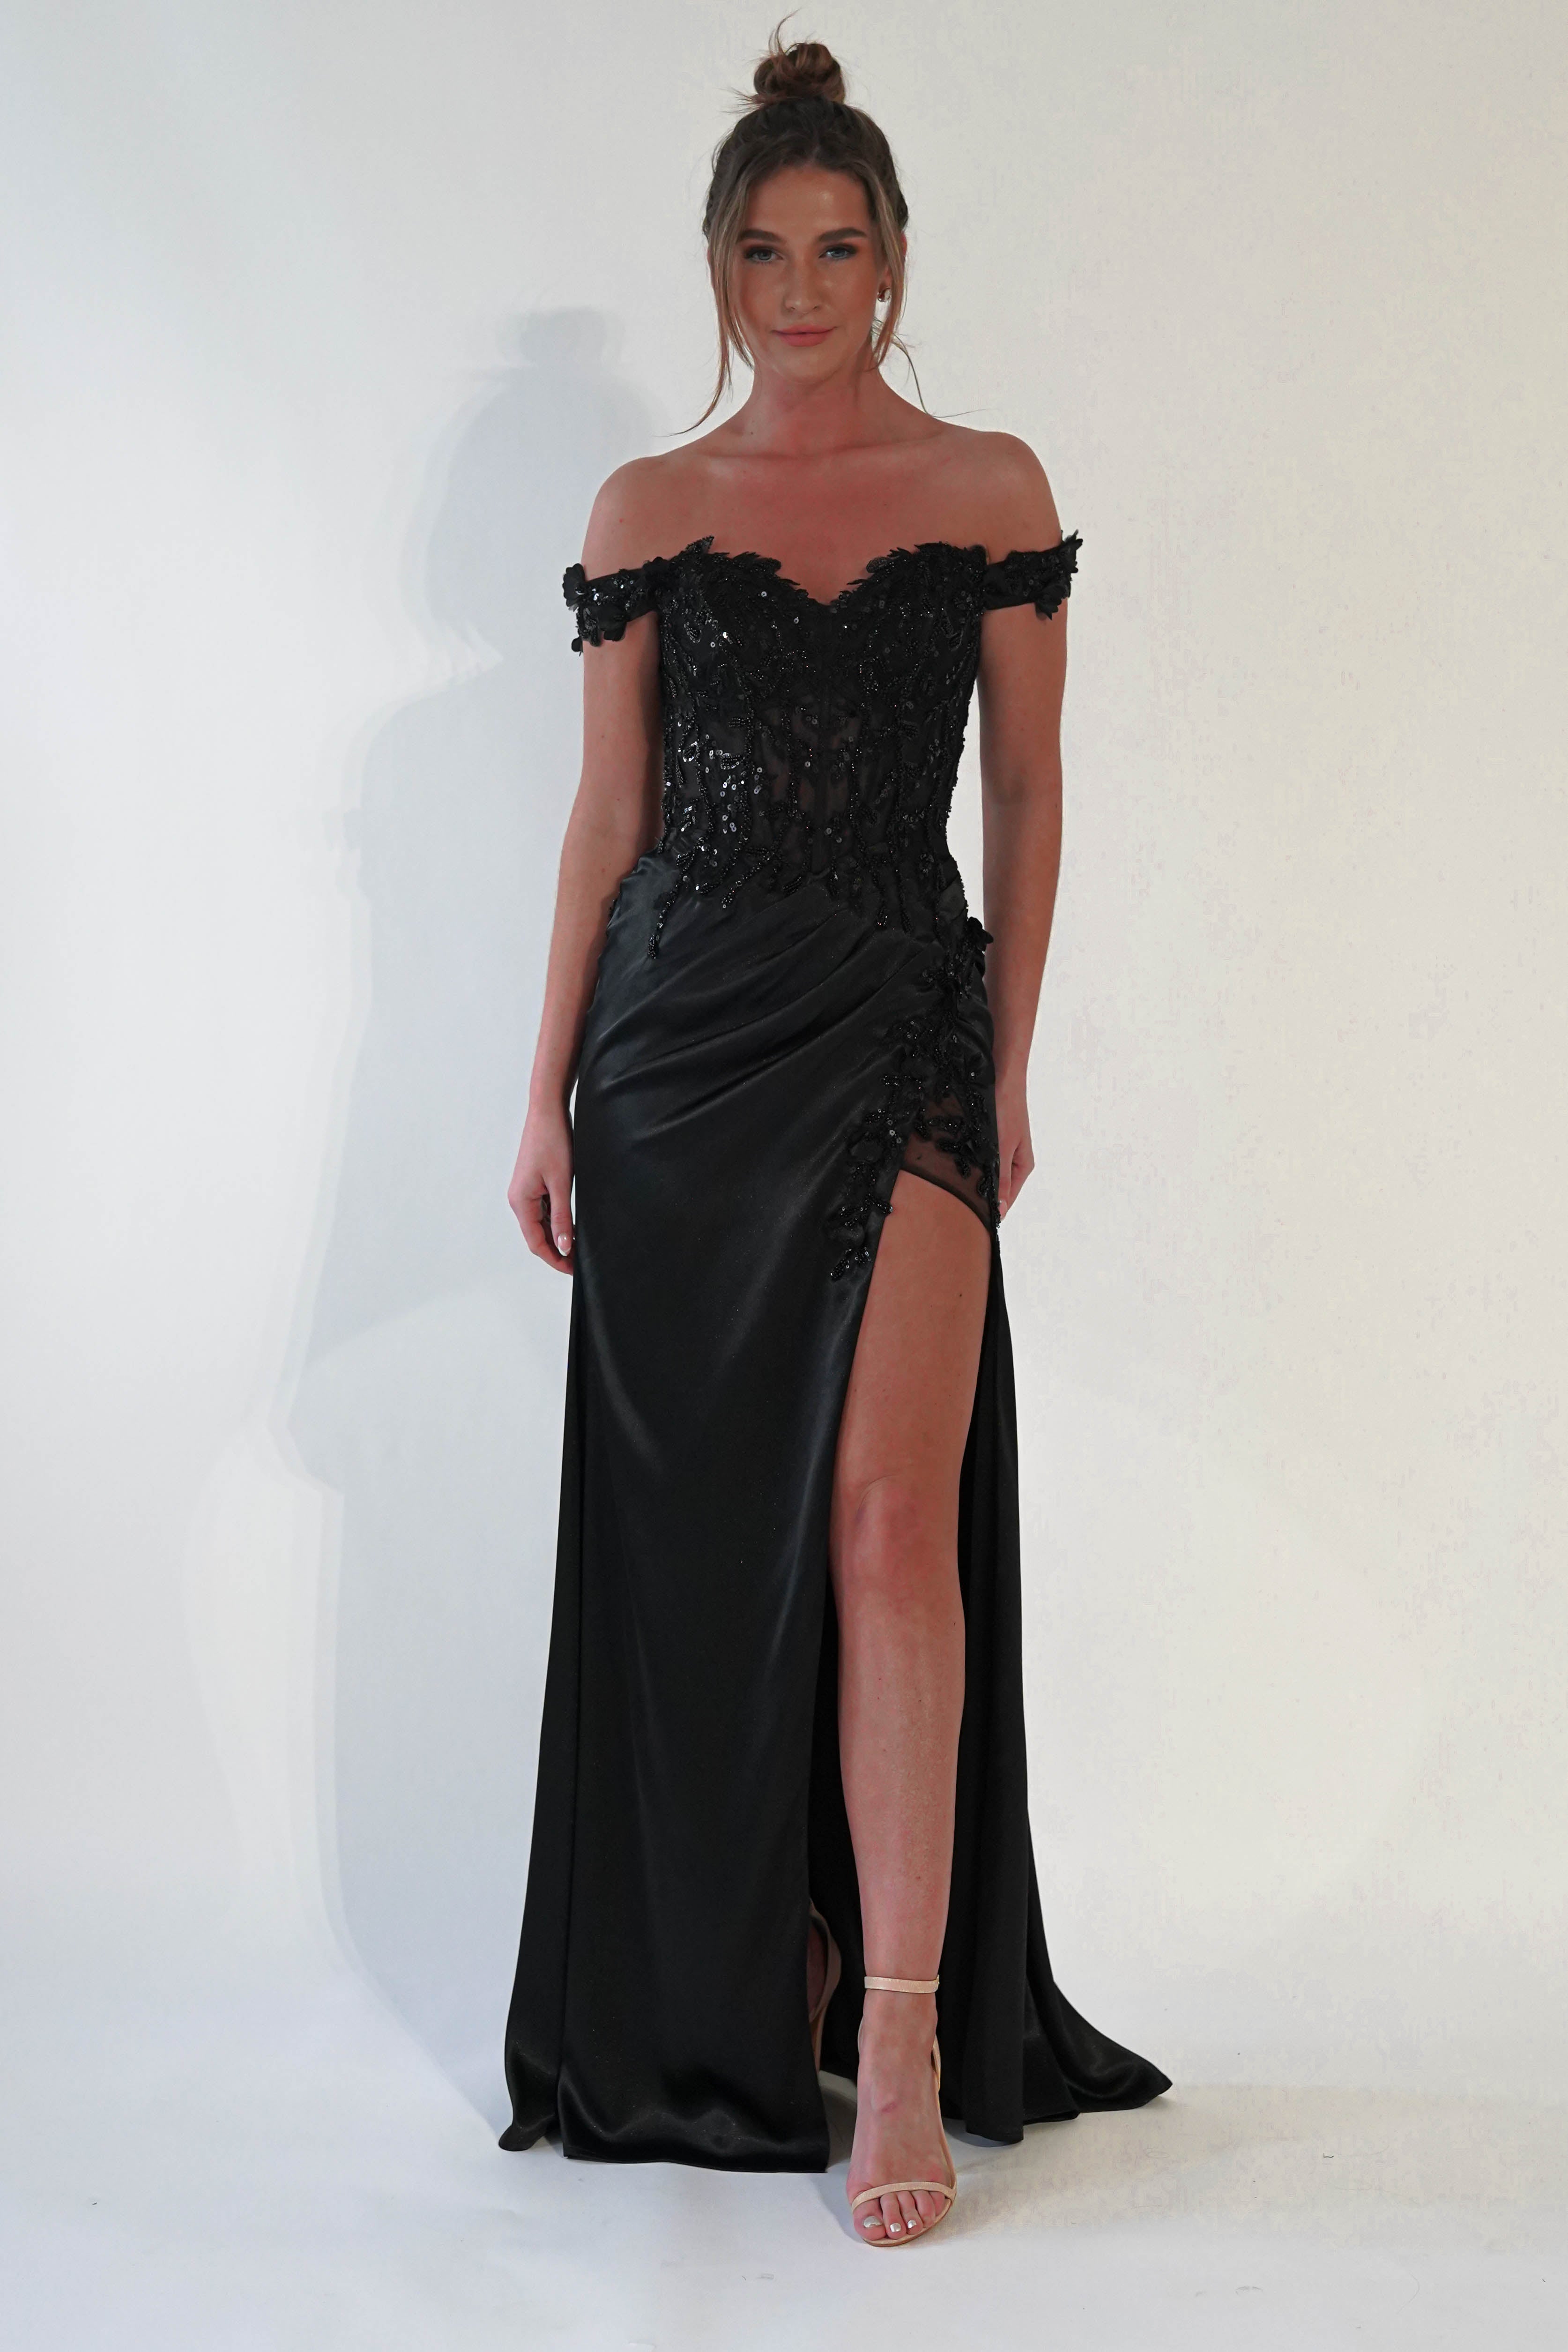 khacy-embellished-gown-black-dresses-52732541501781.jpg